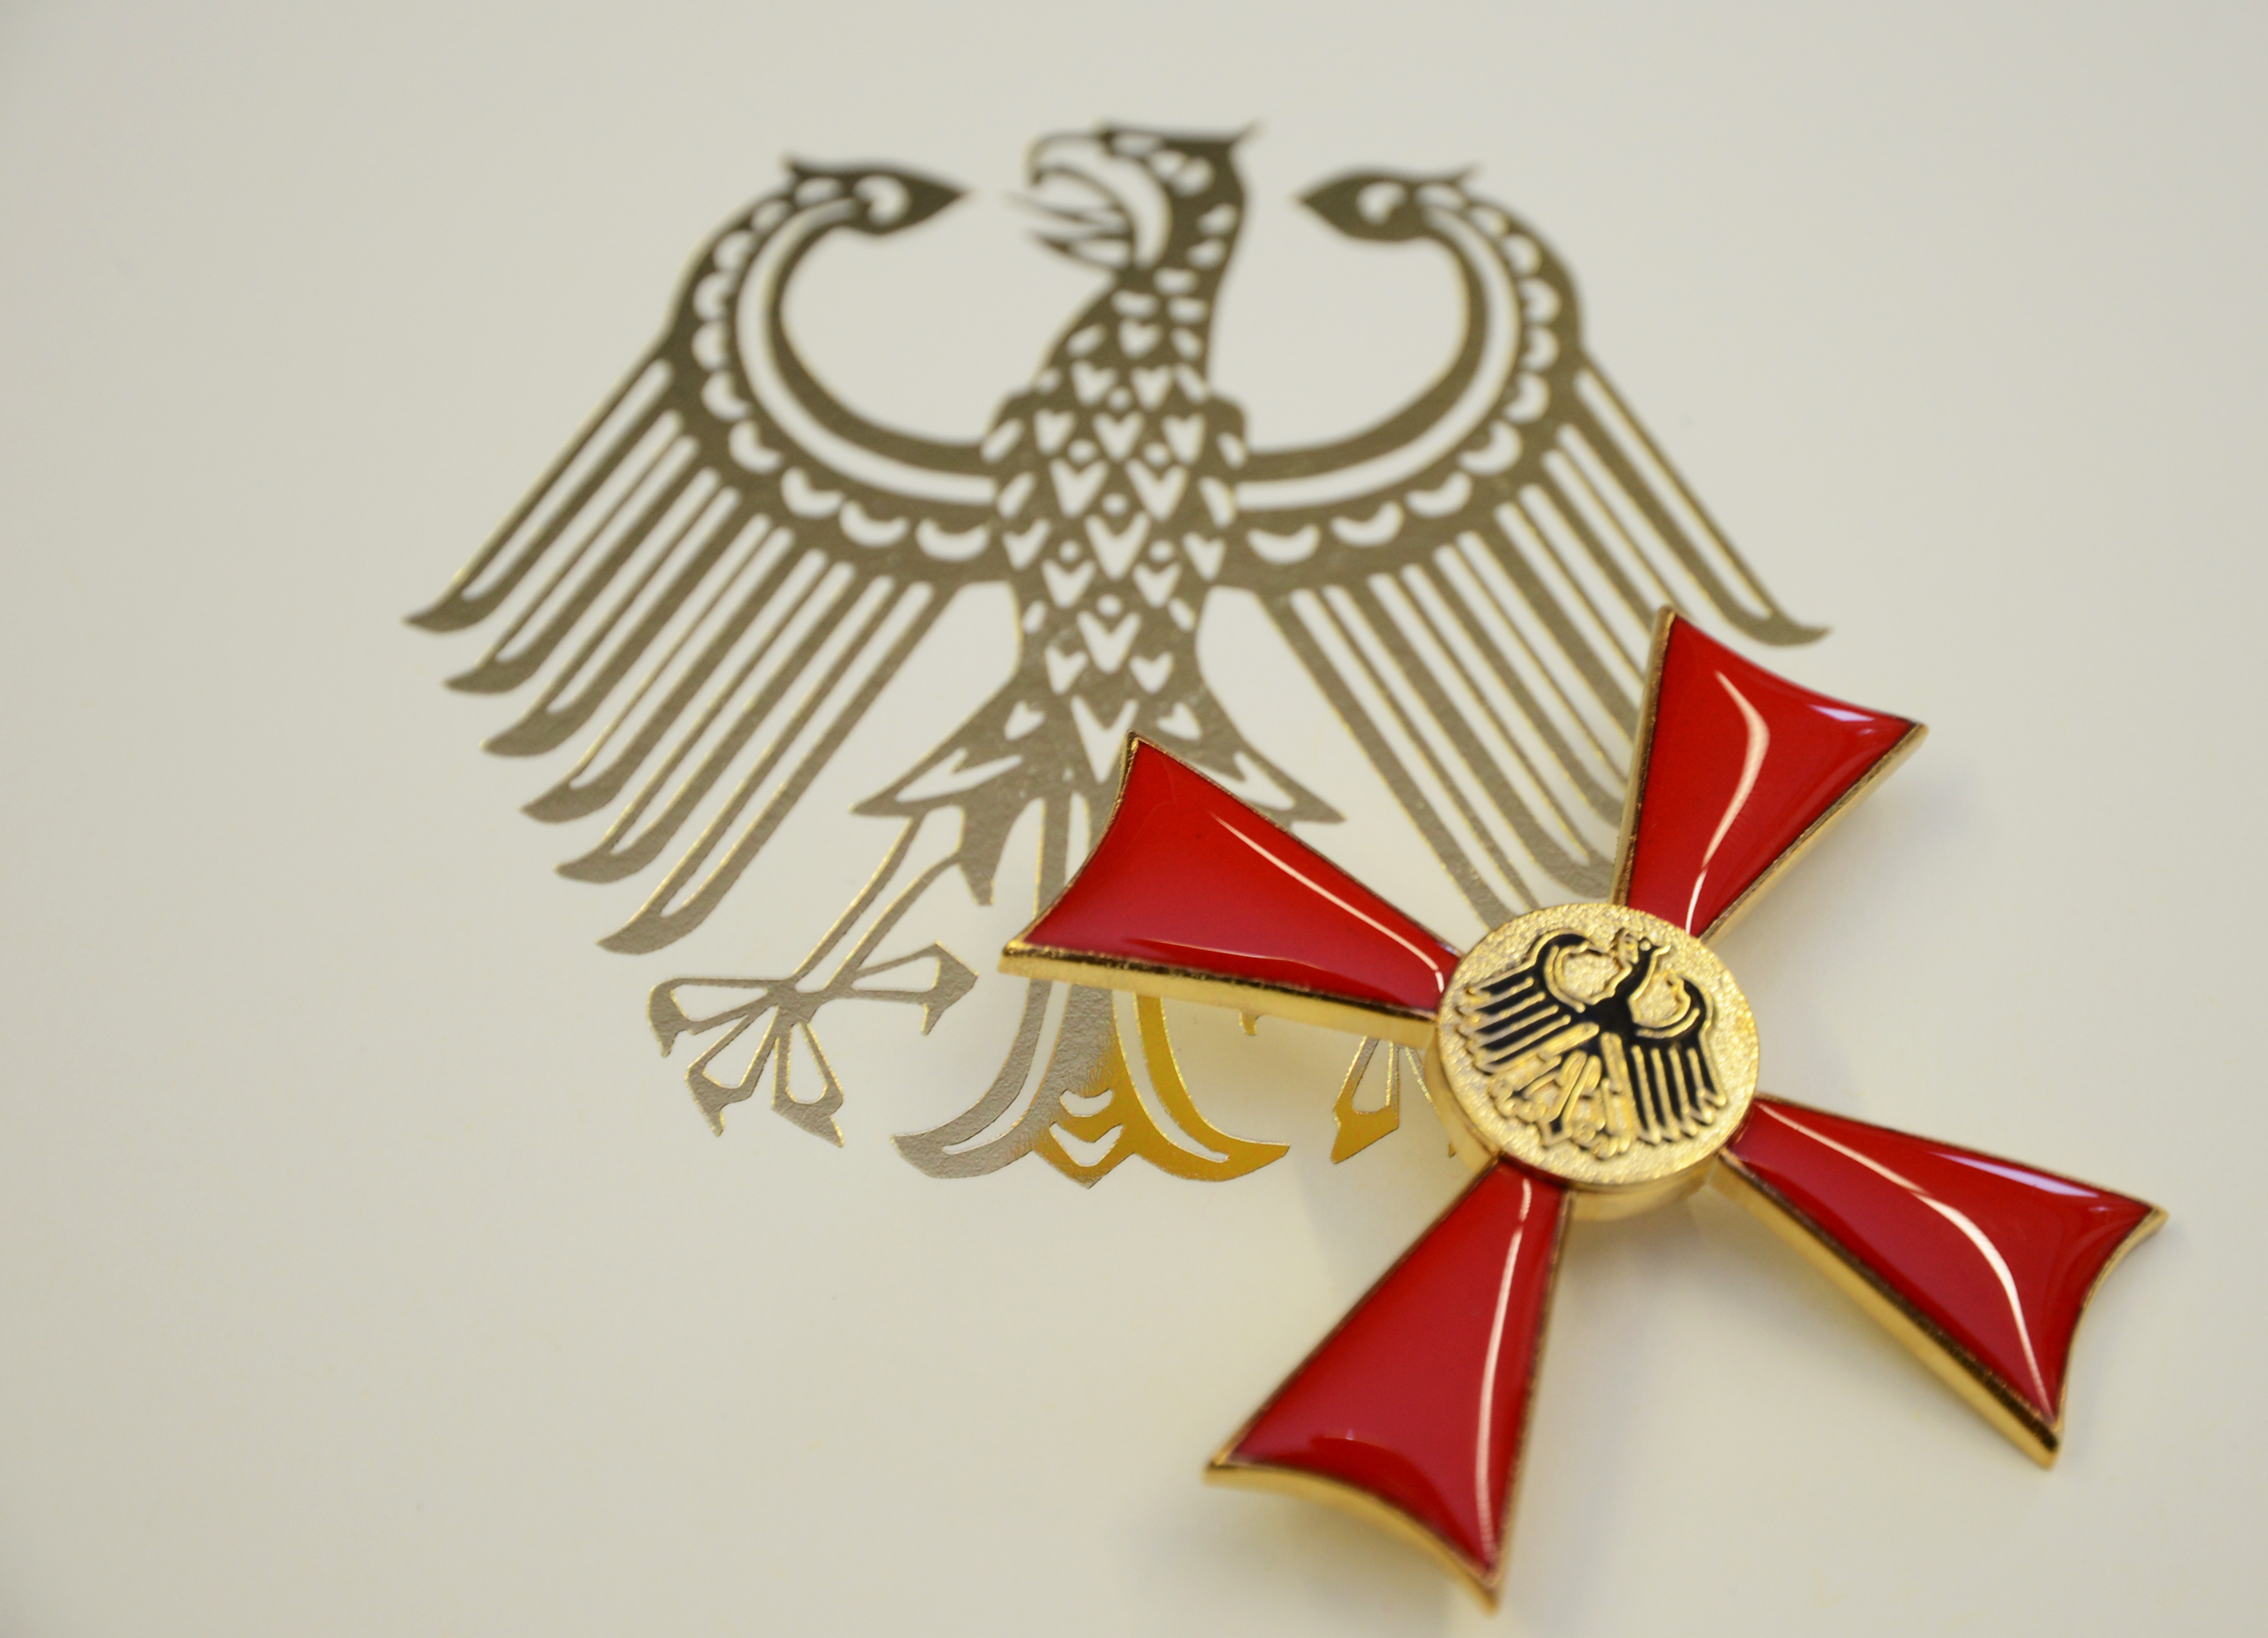 Bundesverdienstkreuz für Hans-Joachim Kayser - Landrätin überreicht Orden während Feierstunde am 28. März 